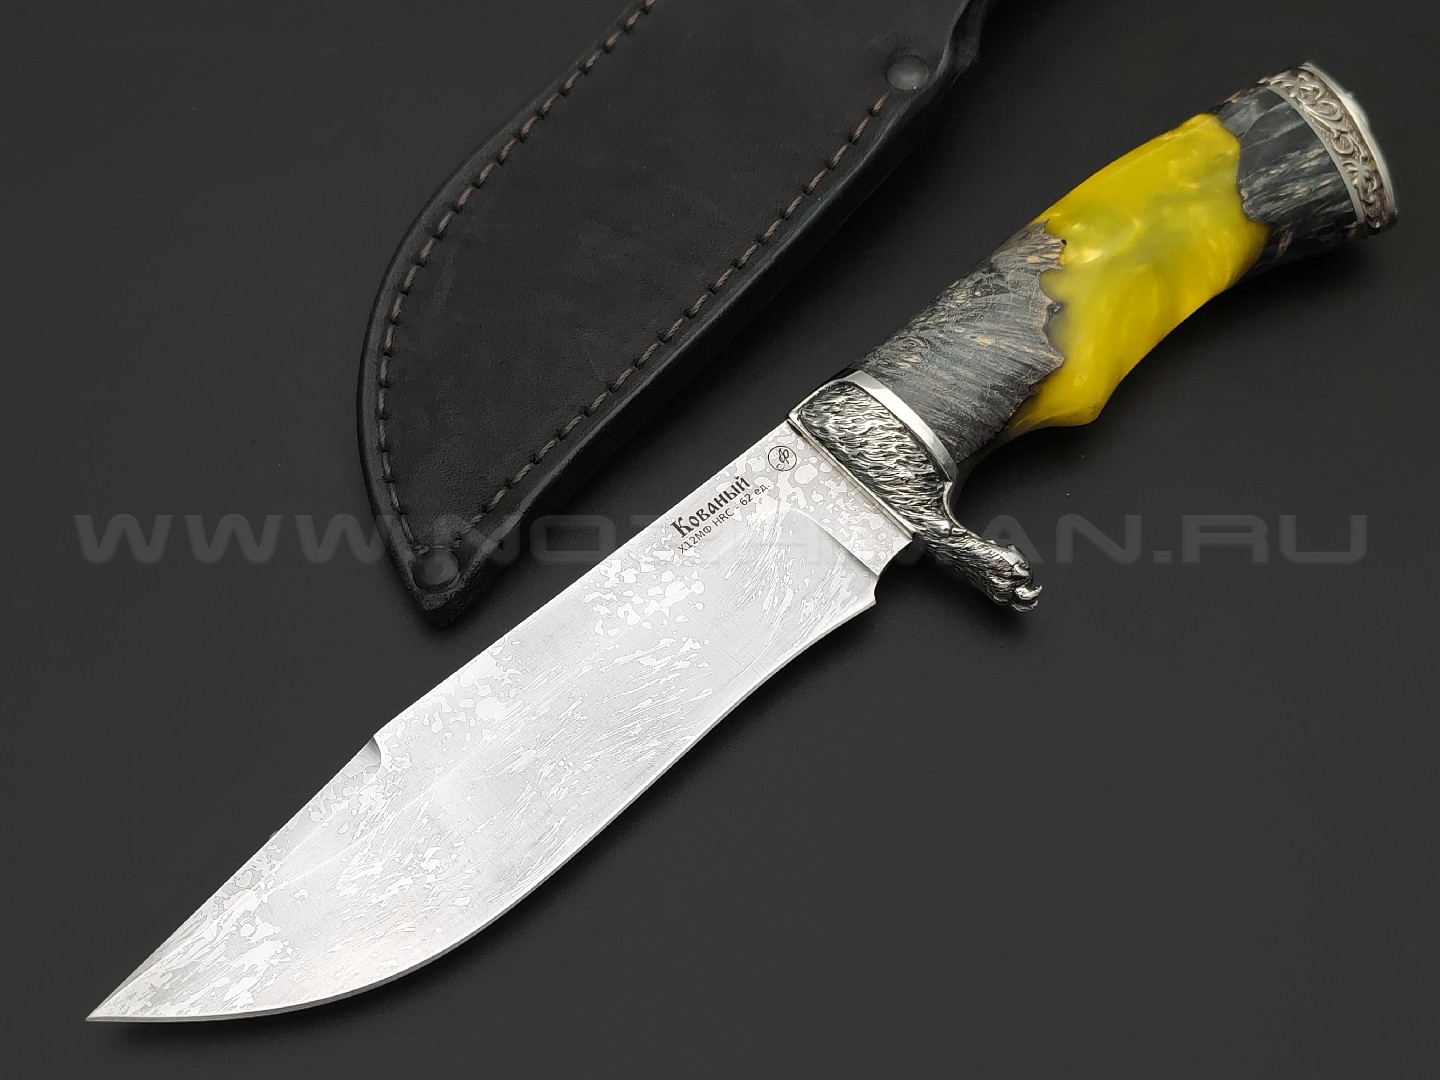 Фурсач А. А. нож Газель-2 сталь Х12МФ травление, рукоять Гибрид дерева и акрила, мельхиор